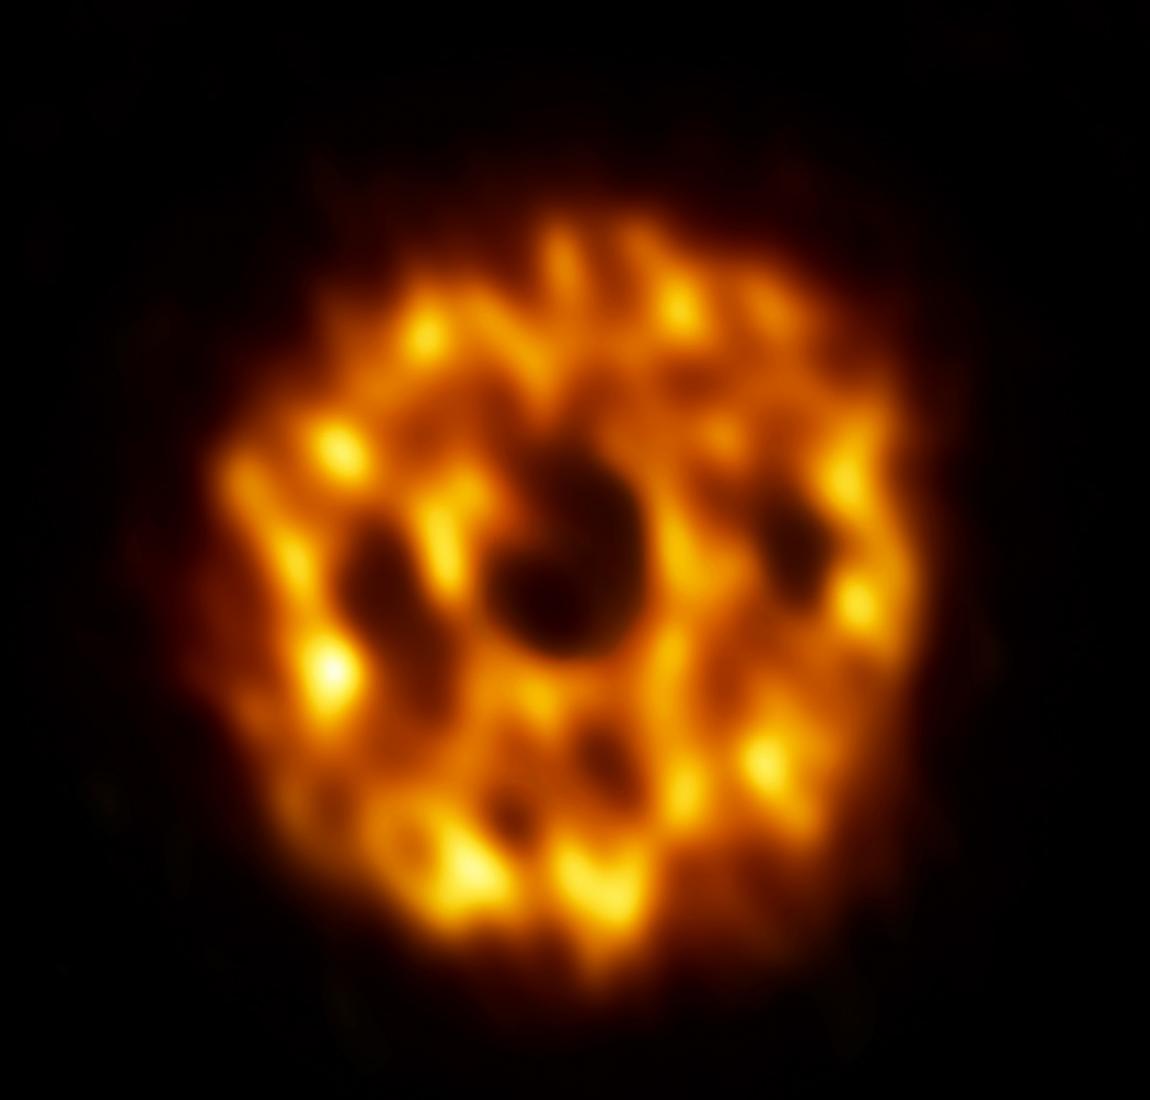 天文学家观测到围绕一颗类似太阳的恒星HD 107146的高浓度尘埃